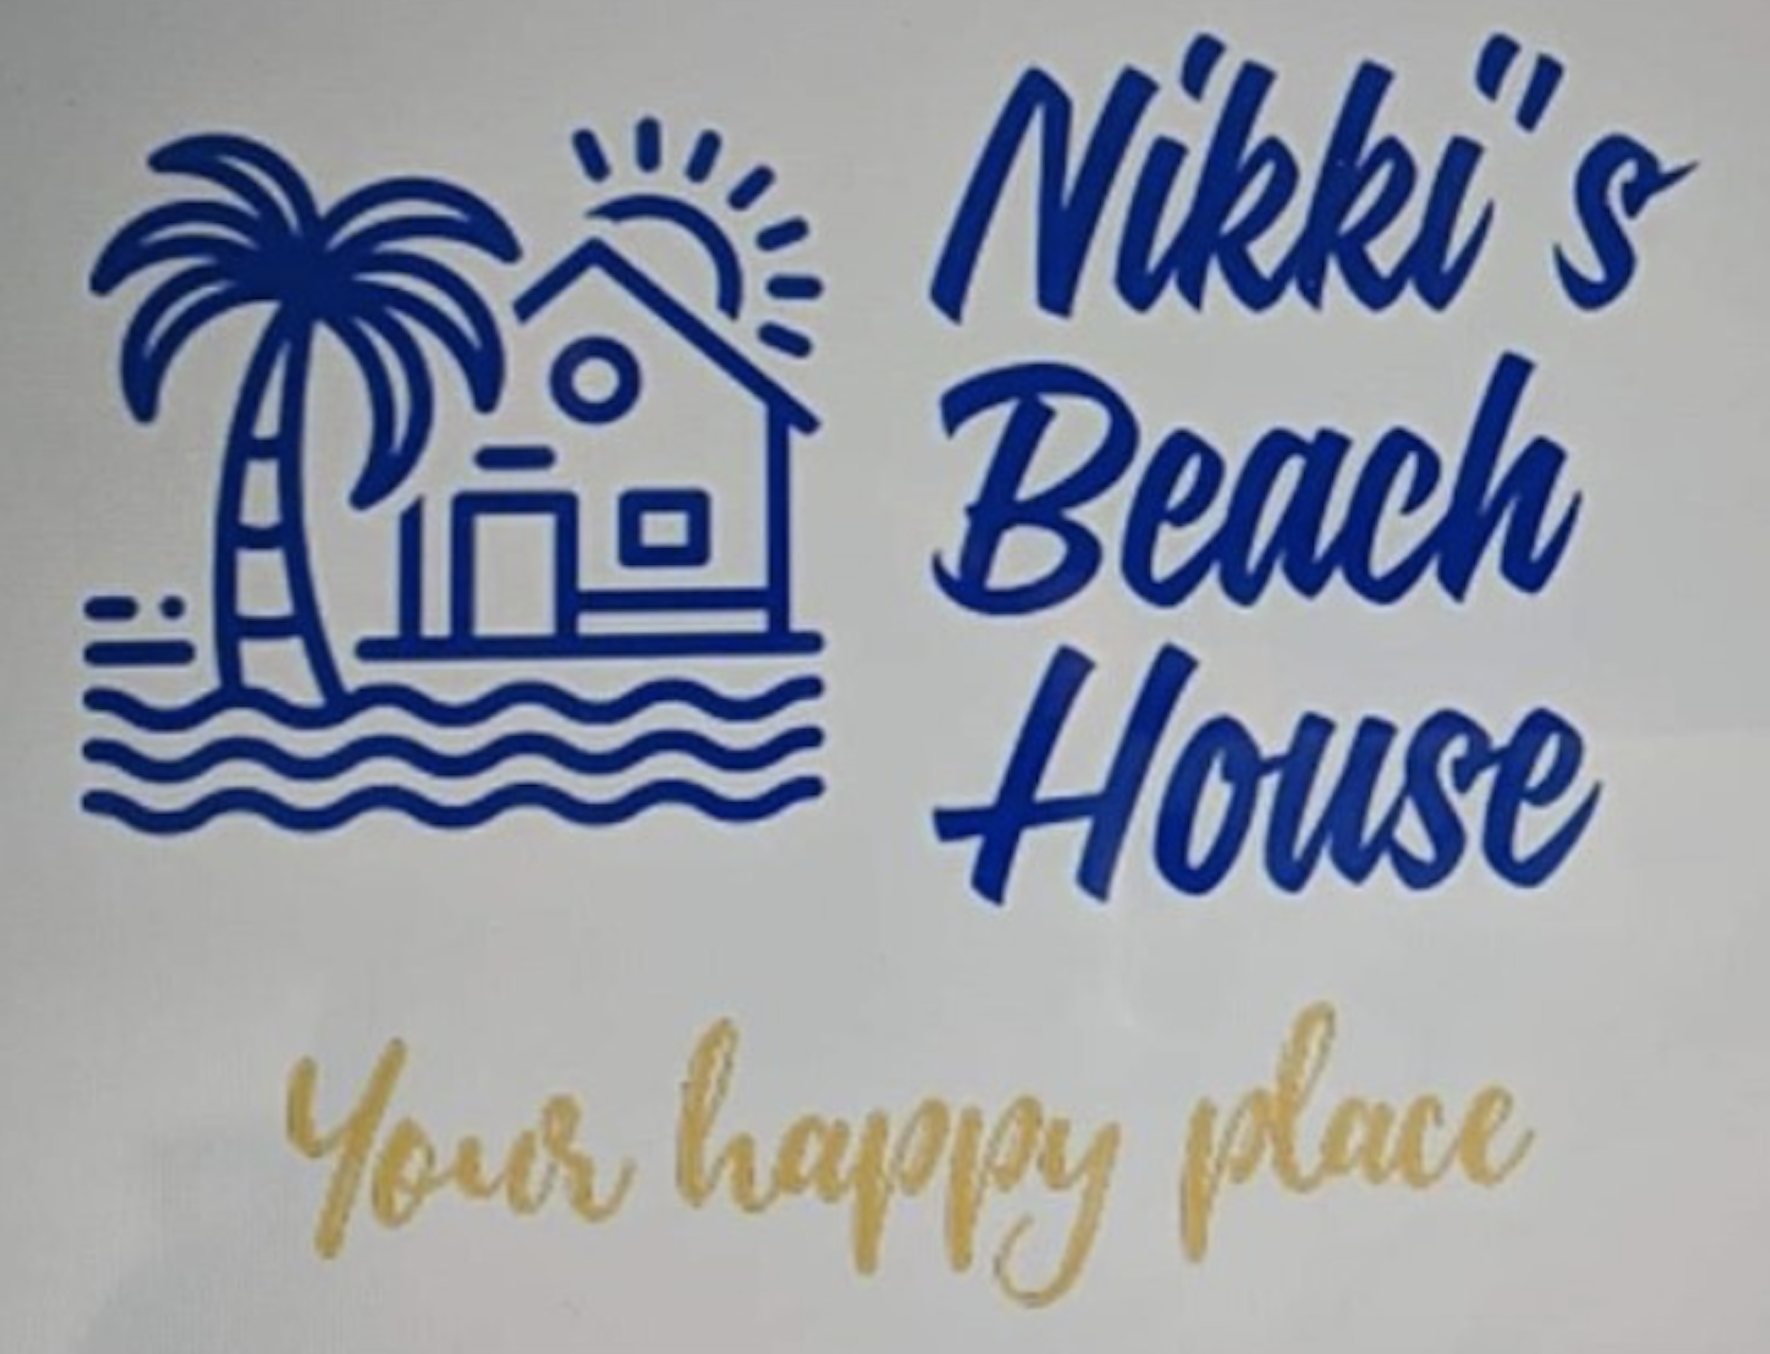 Nikki's Beach House Grill